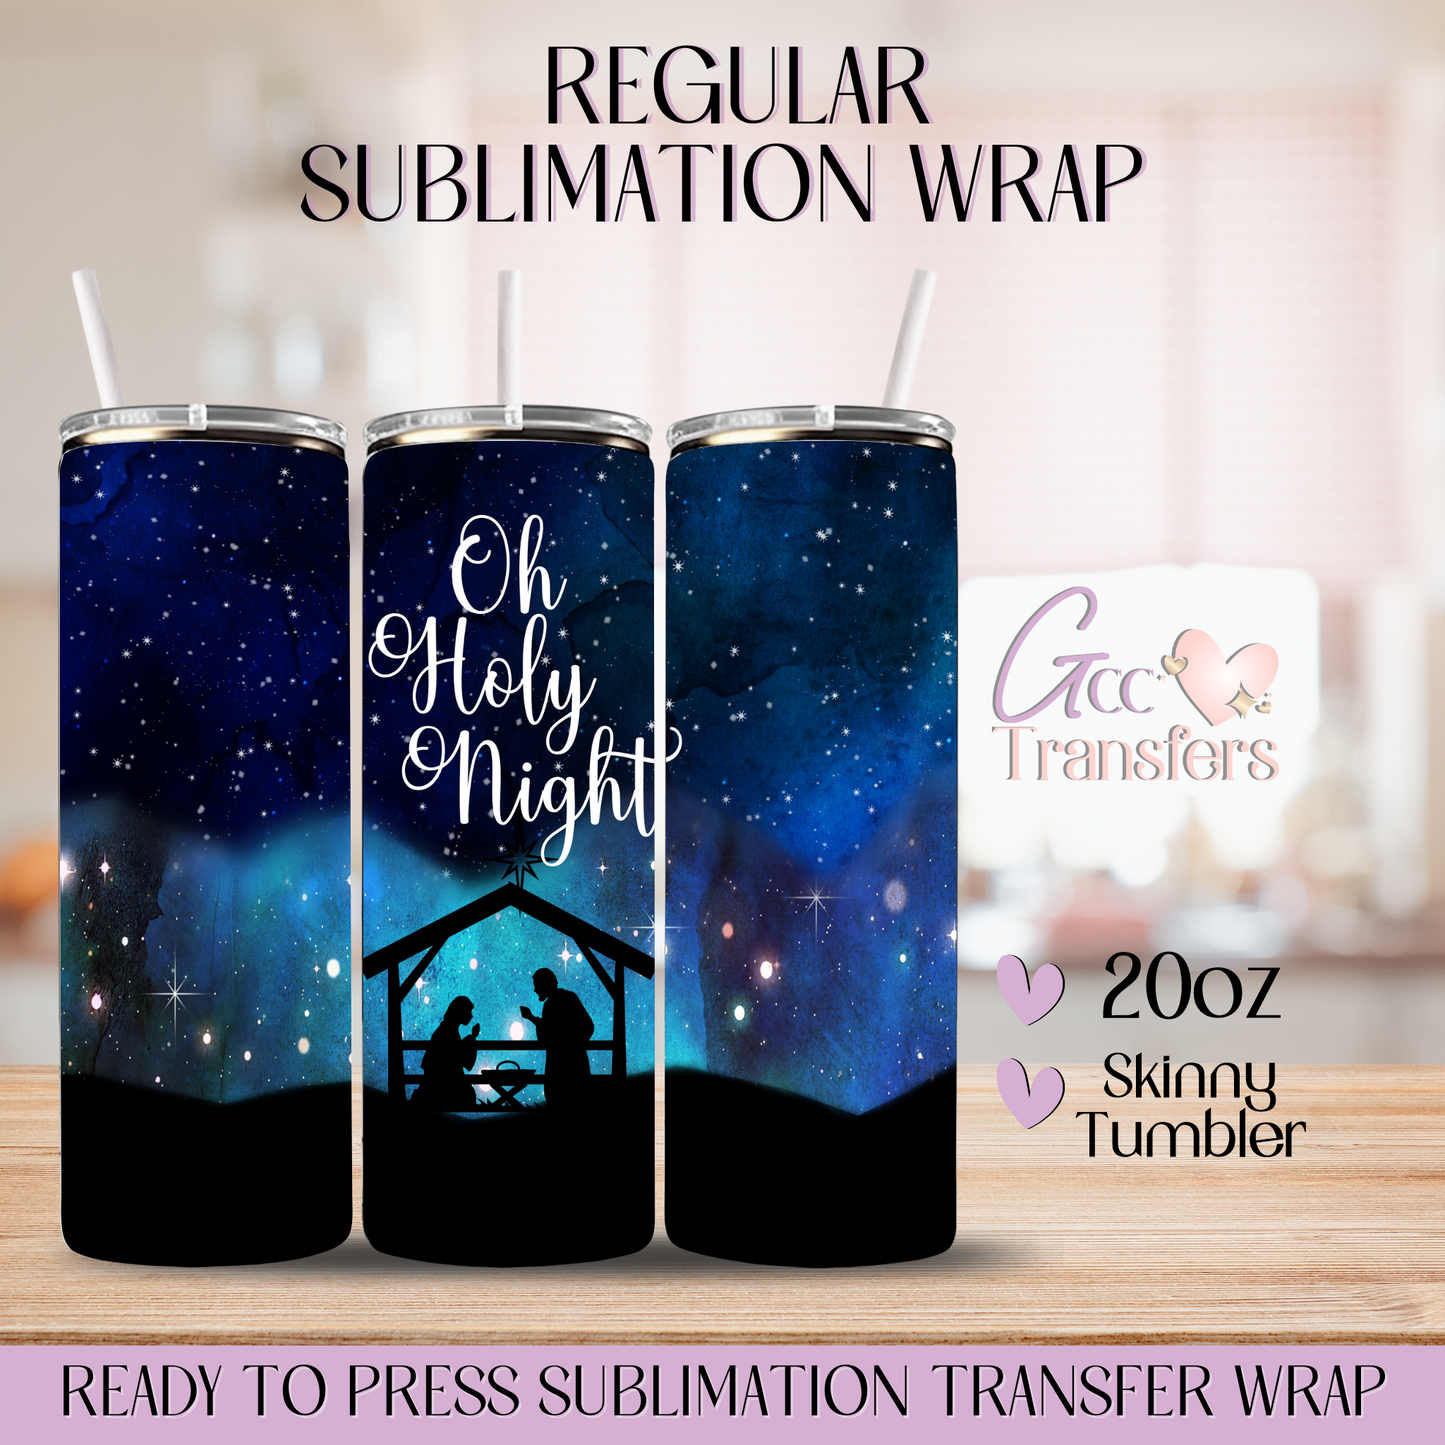 Oh Holy Night - 20oz Regular Sublimation Wrap